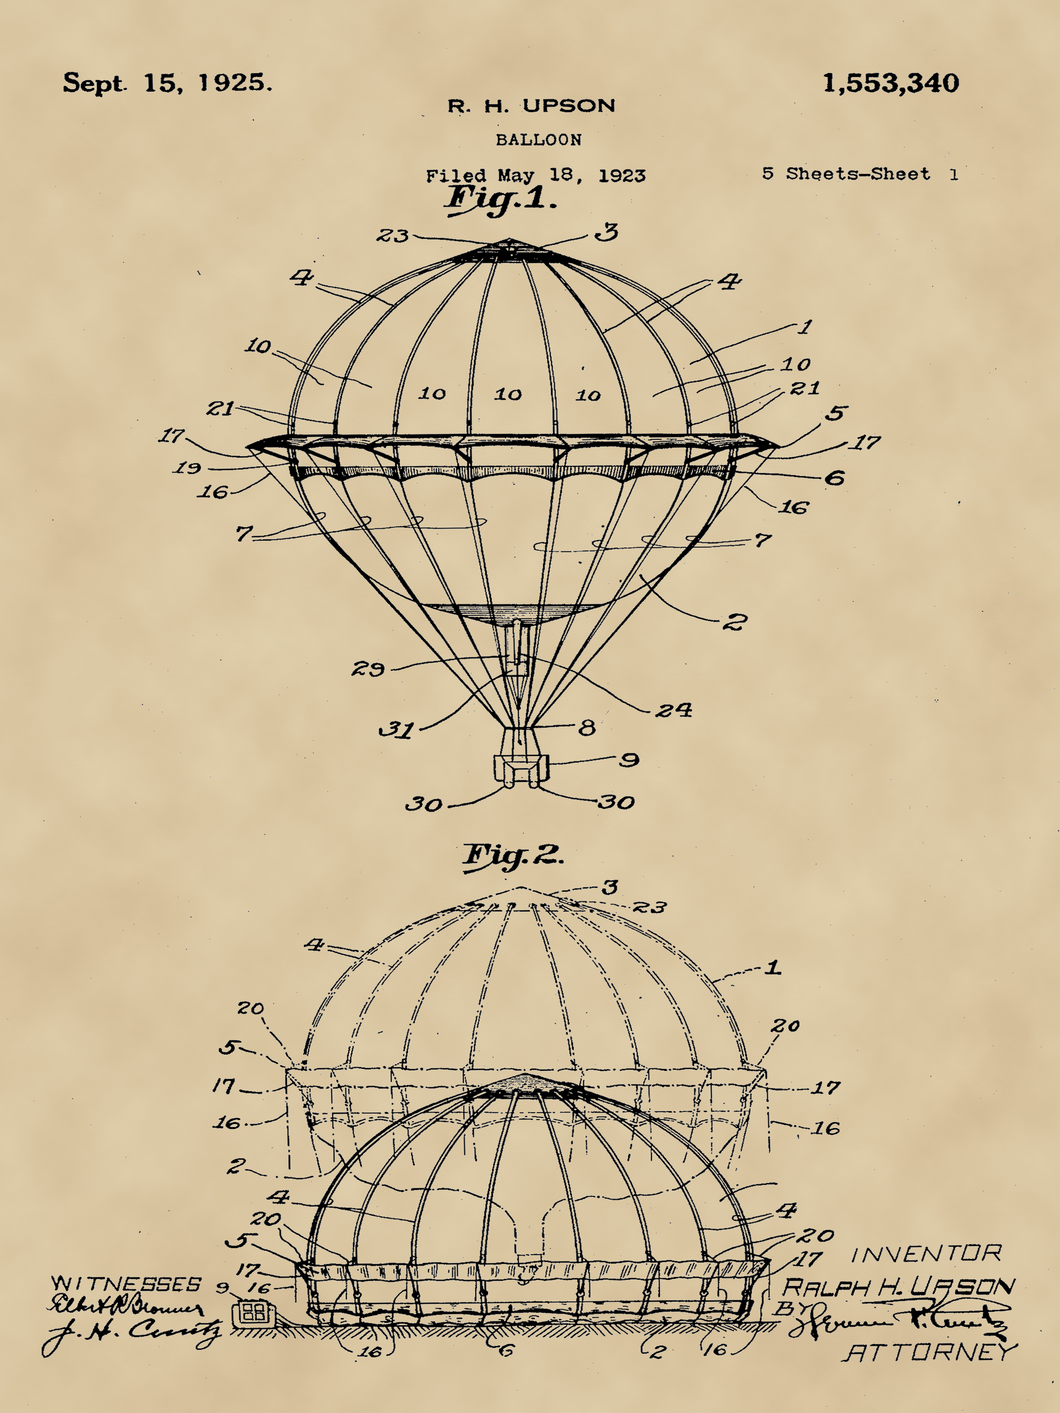 Légballon, vintage, industrial stílusú poszter, 1925-ös amerikai szabadalmi rajz alapján